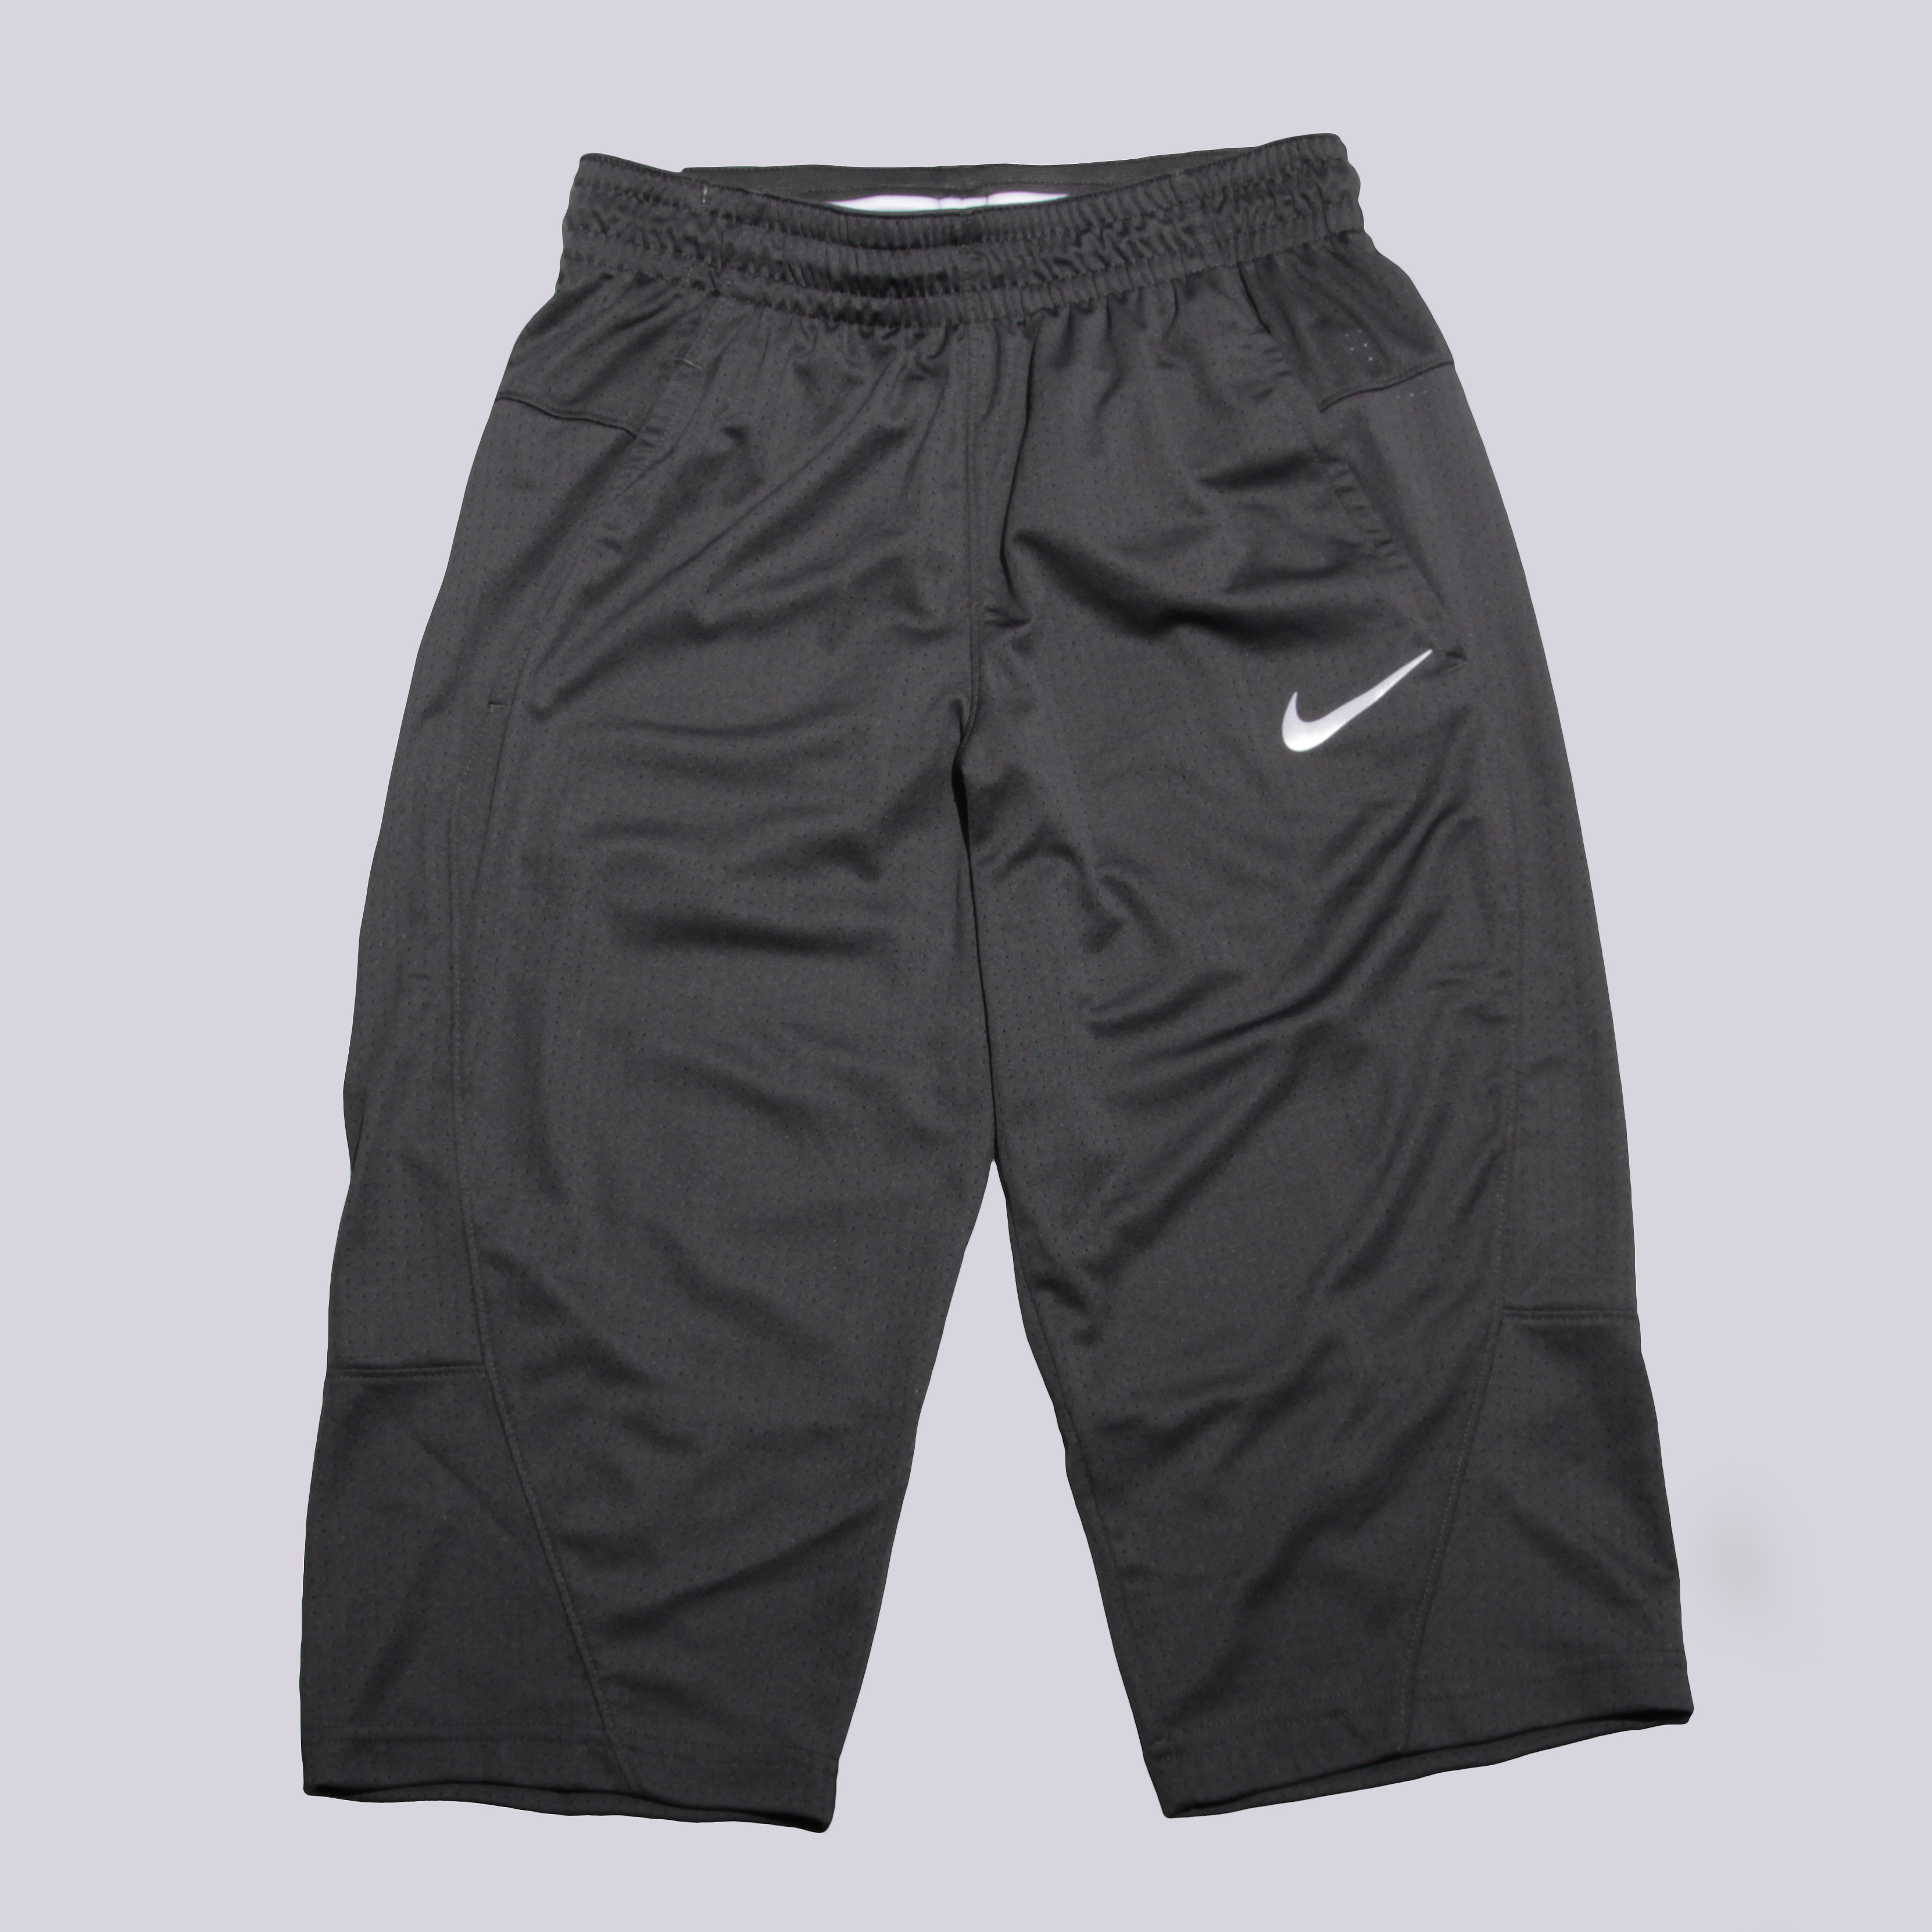 мужские серые шорты Nike Hangtime Mesh 841815-060 - цена, описание, фото 1